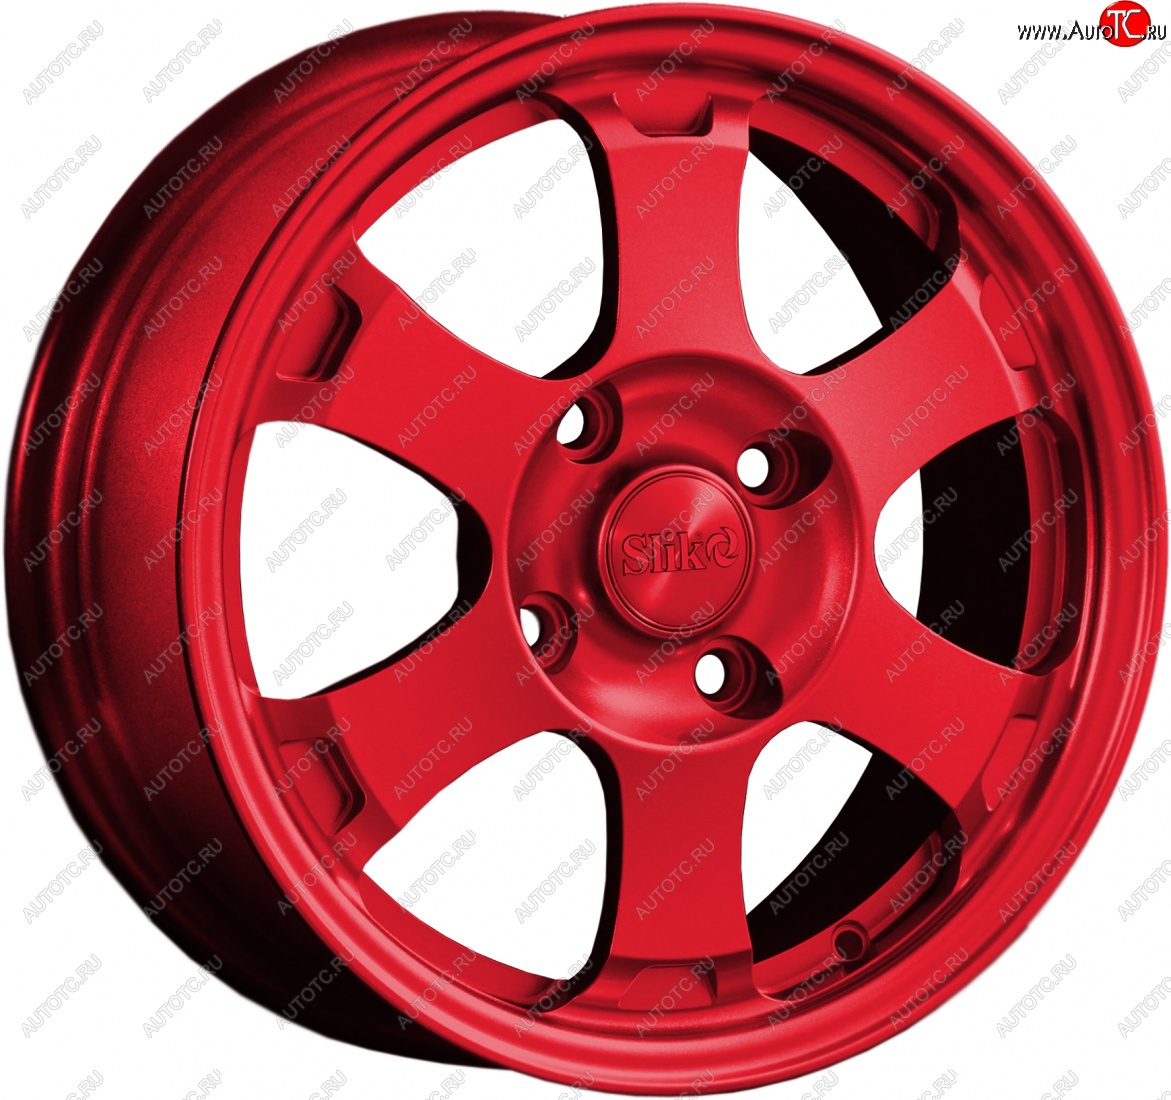 14 799 р. Кованый диск Slik Classik 6x15 (Красный) Alfa Romeo 146 930B лифтбэк (1995-2000) 4x98.0xDIA58.1xET45.0 (Цвет: Красный)